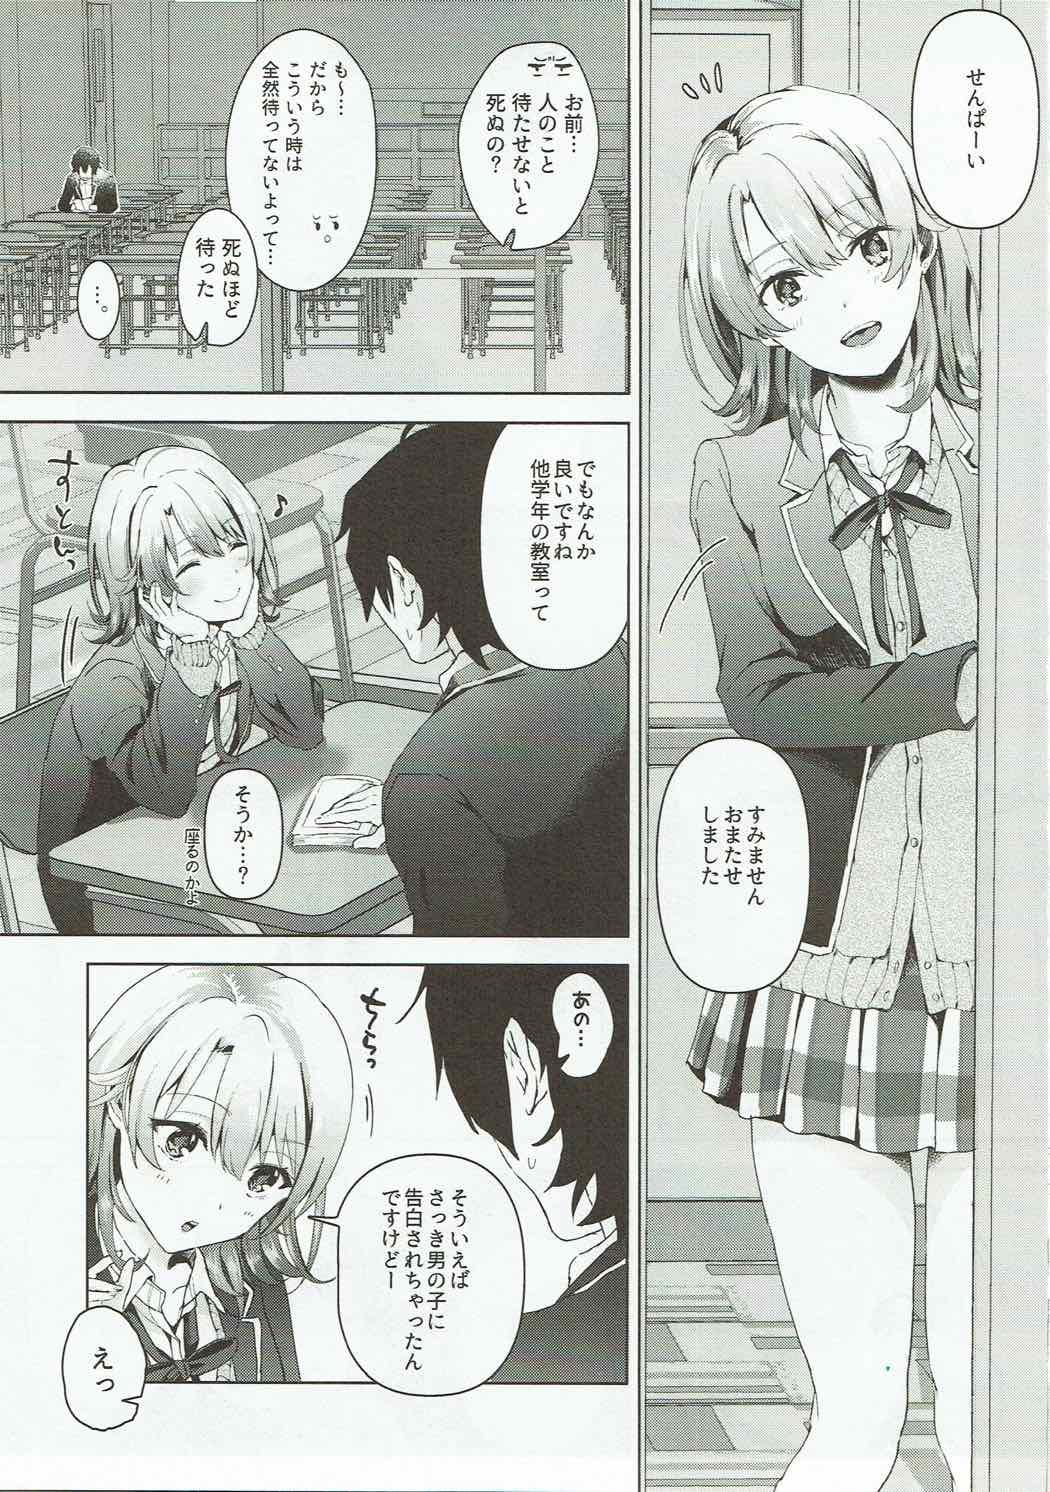 Nice Yahari Ore wa Isshiki Iroha no Shoujou de Odoritsuzukeru. - Yahari ore no seishun love come wa machigatteiru Masturbating - Page 2